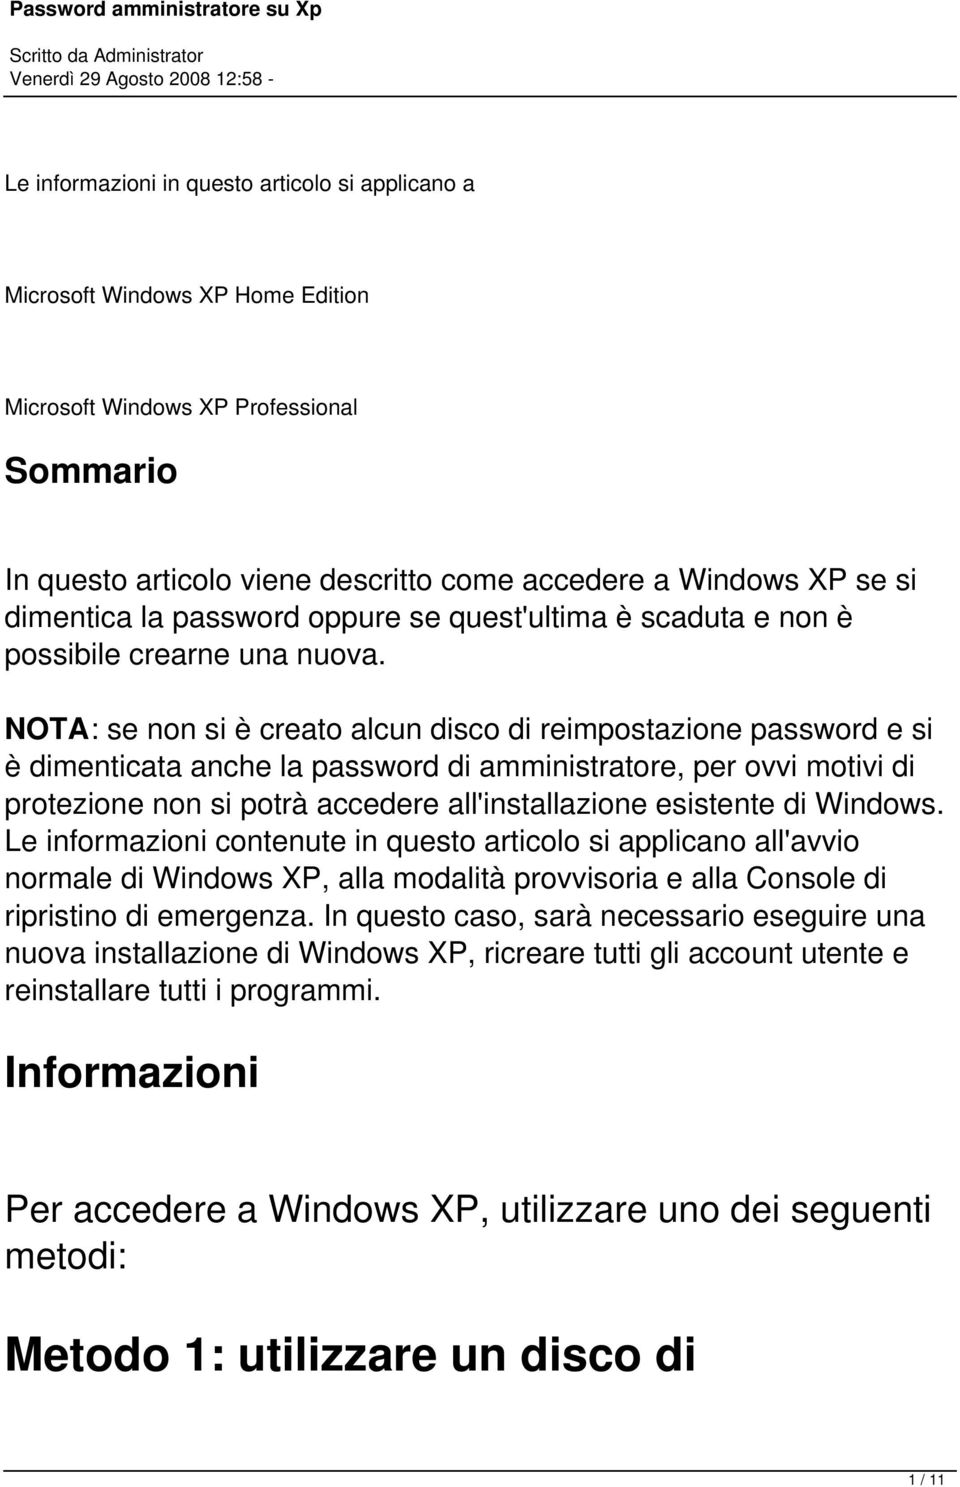 amministratore, per ovvi motivi di protezione non si potrà accedere all'installazione esistente di Windows Le informazioni contenute in questo articolo si applicano all'avvio normale di Windows XP,